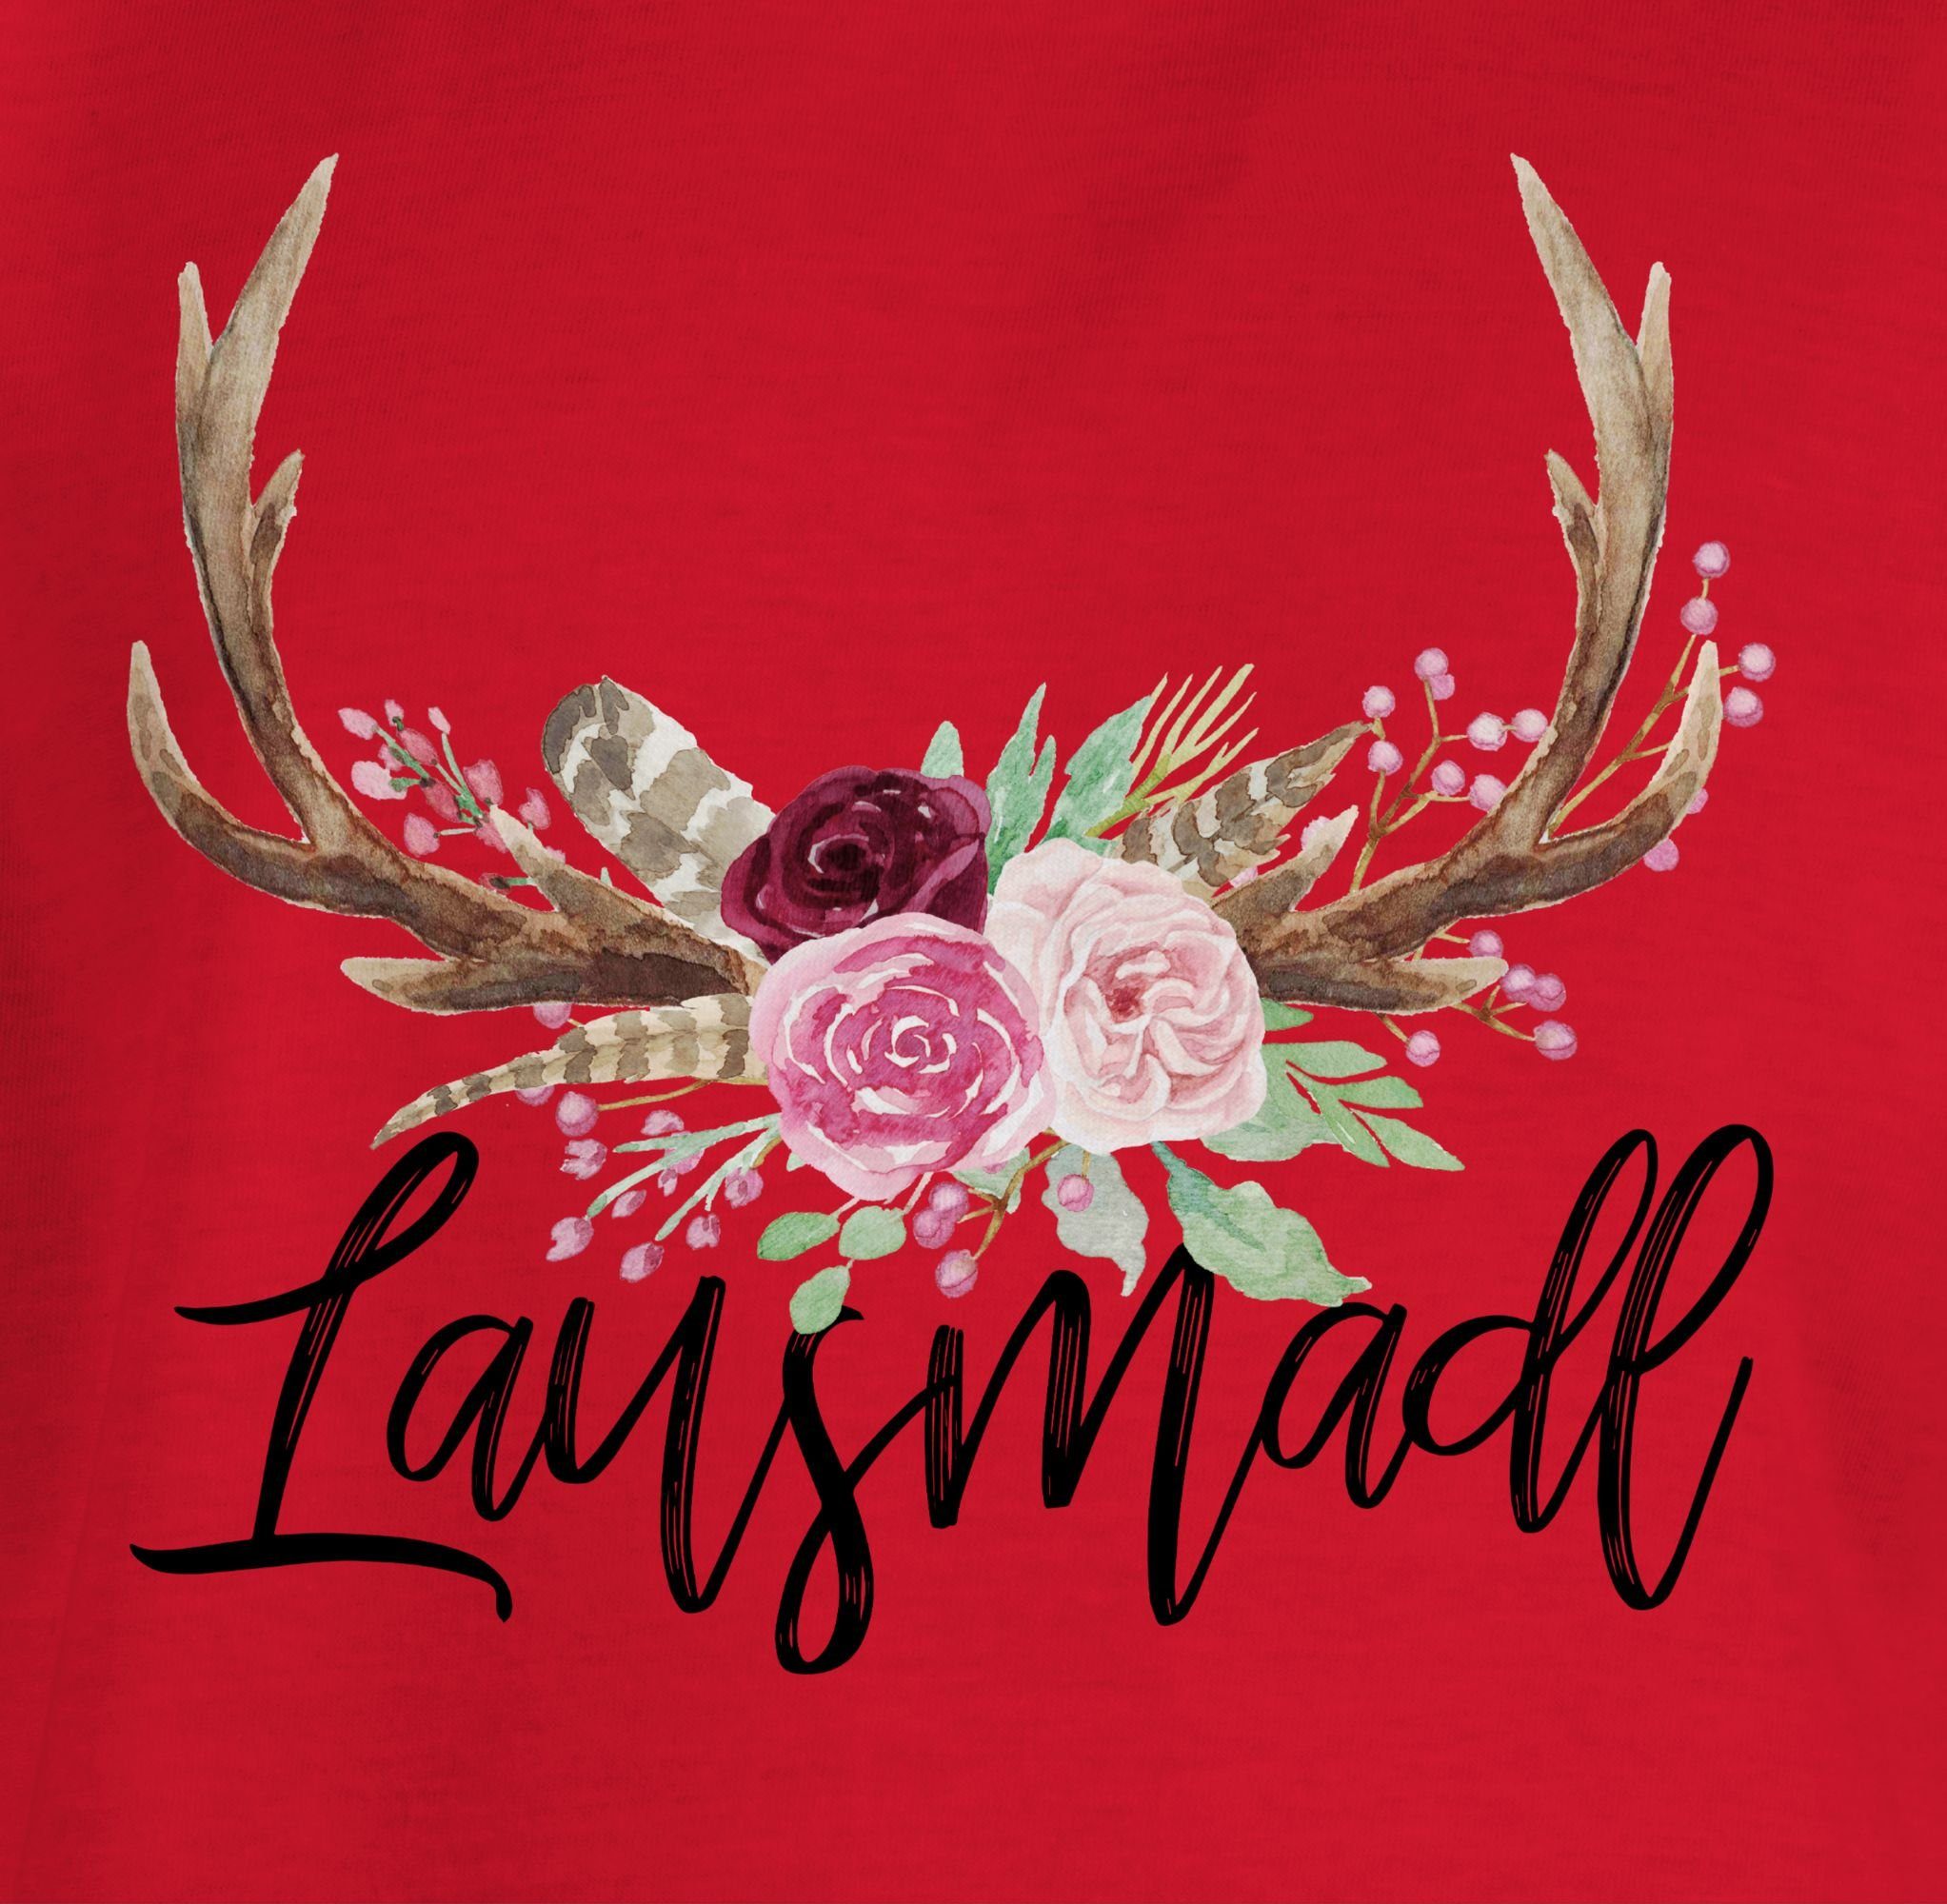 3 Oktoberfest T-Shirt Hirschgeweih Kinder für Lausmadl Outfit Shirtracer Rot Mode